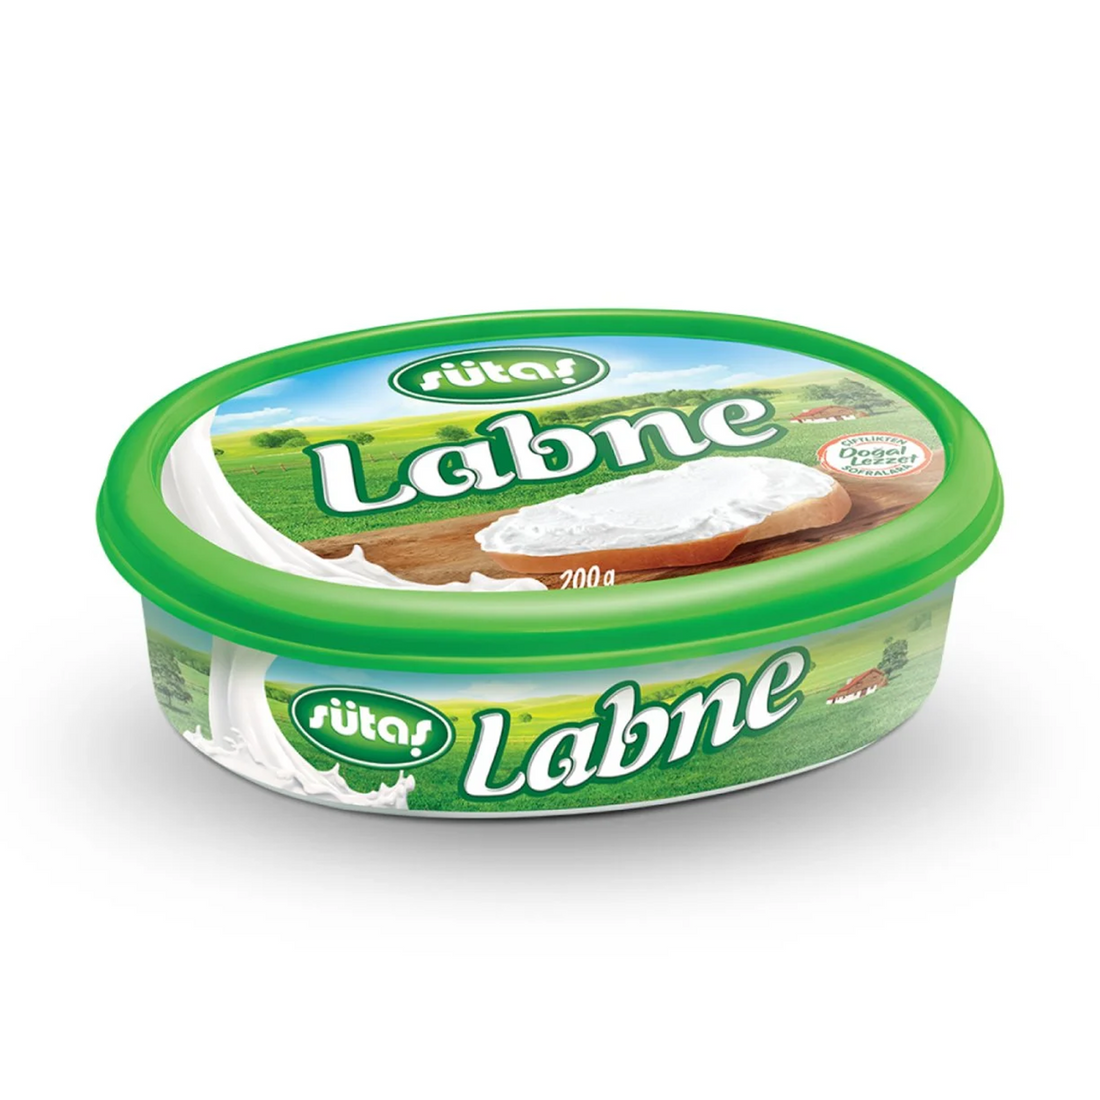 Sutas Labneh Cream Cheese 200g | Sutas Labne Peynir | Labneh Cheese